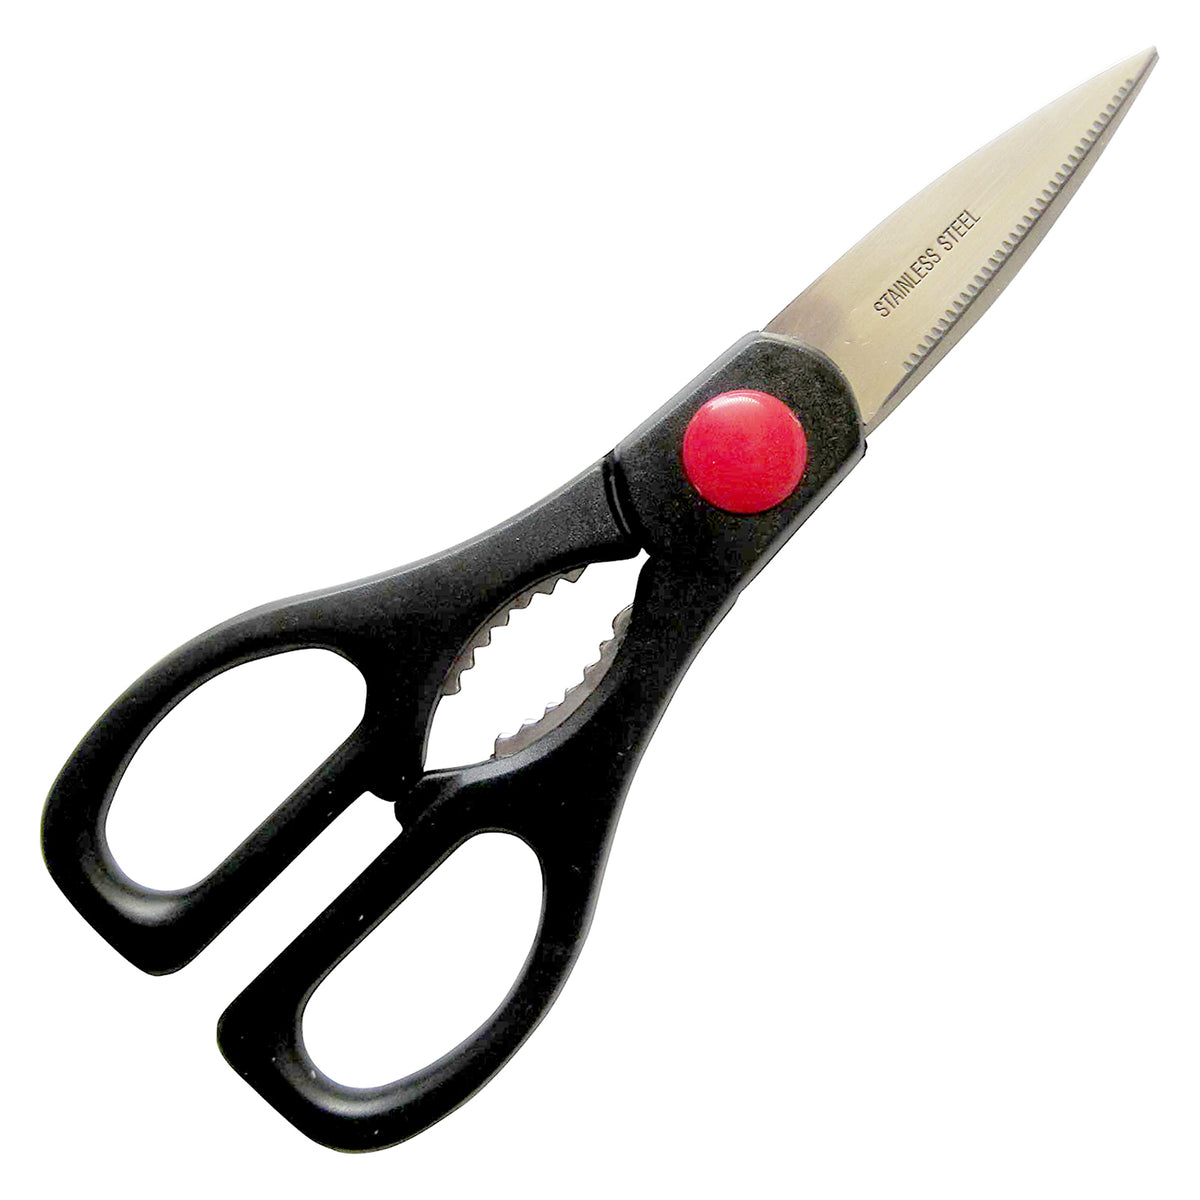 Shimomura Stainless Steel Kitchen Scissors